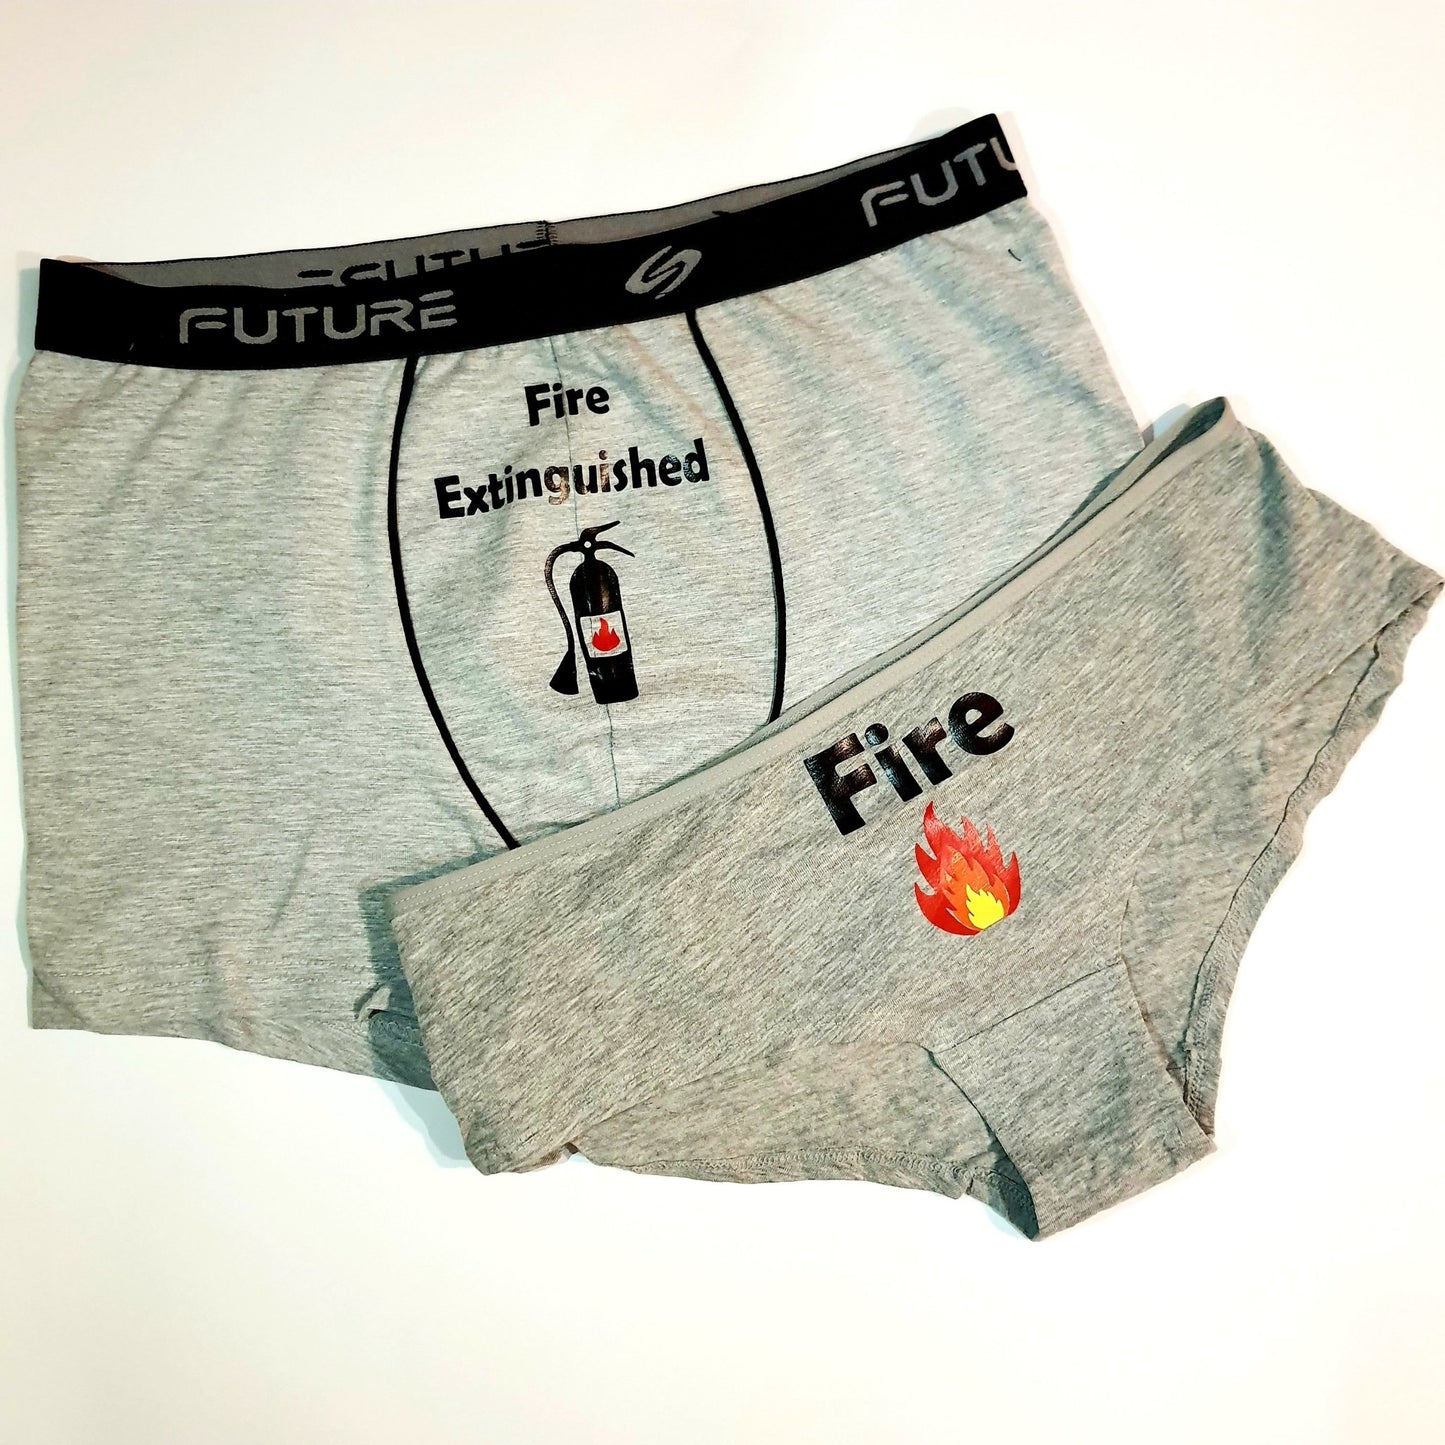 Couple underwear - Fire - Etba3lly